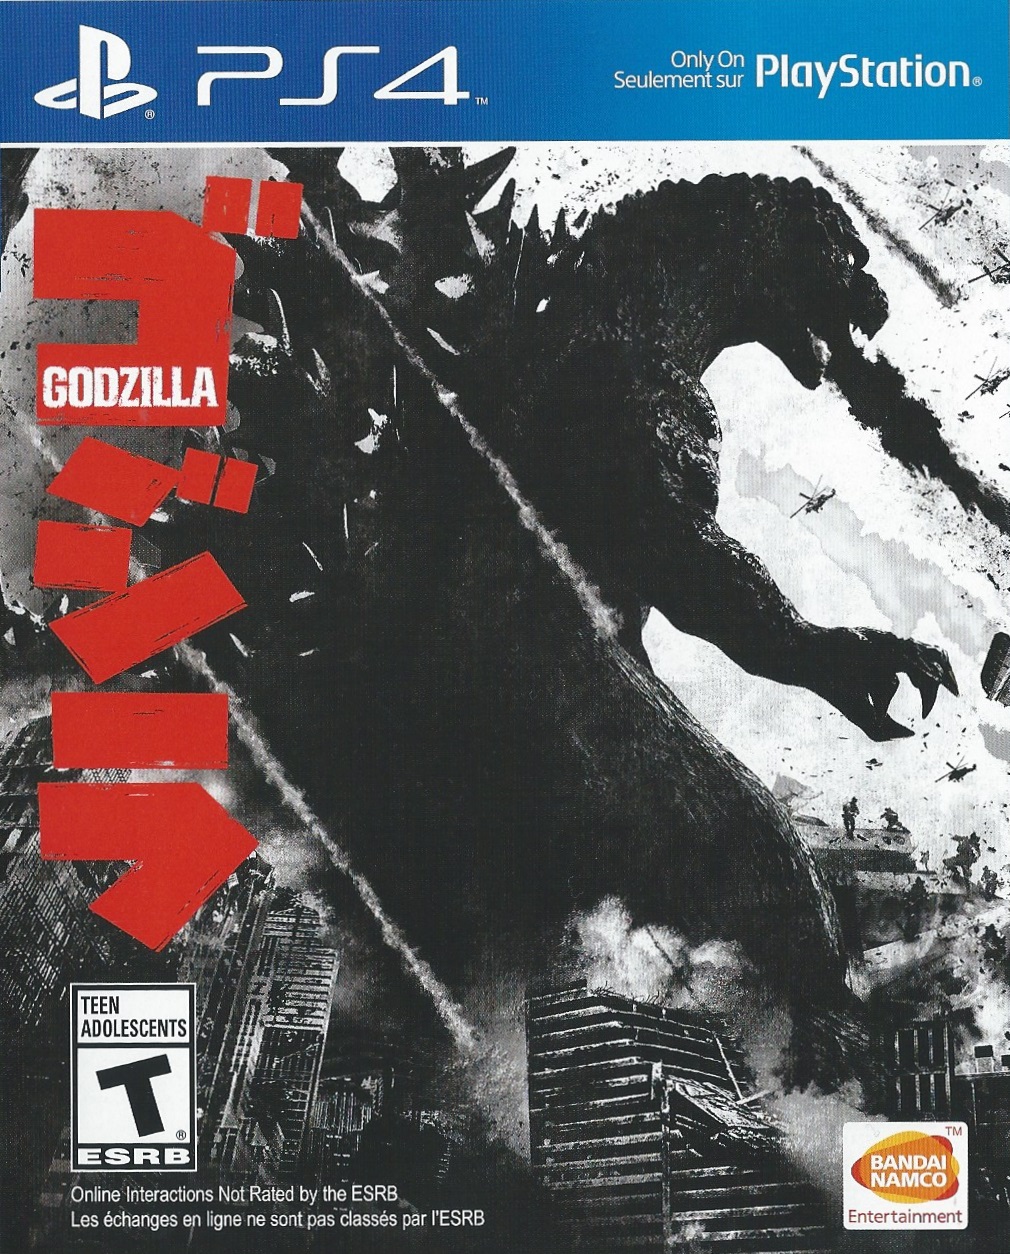 Kết quả hình ảnh cho Godzilla cover ps4